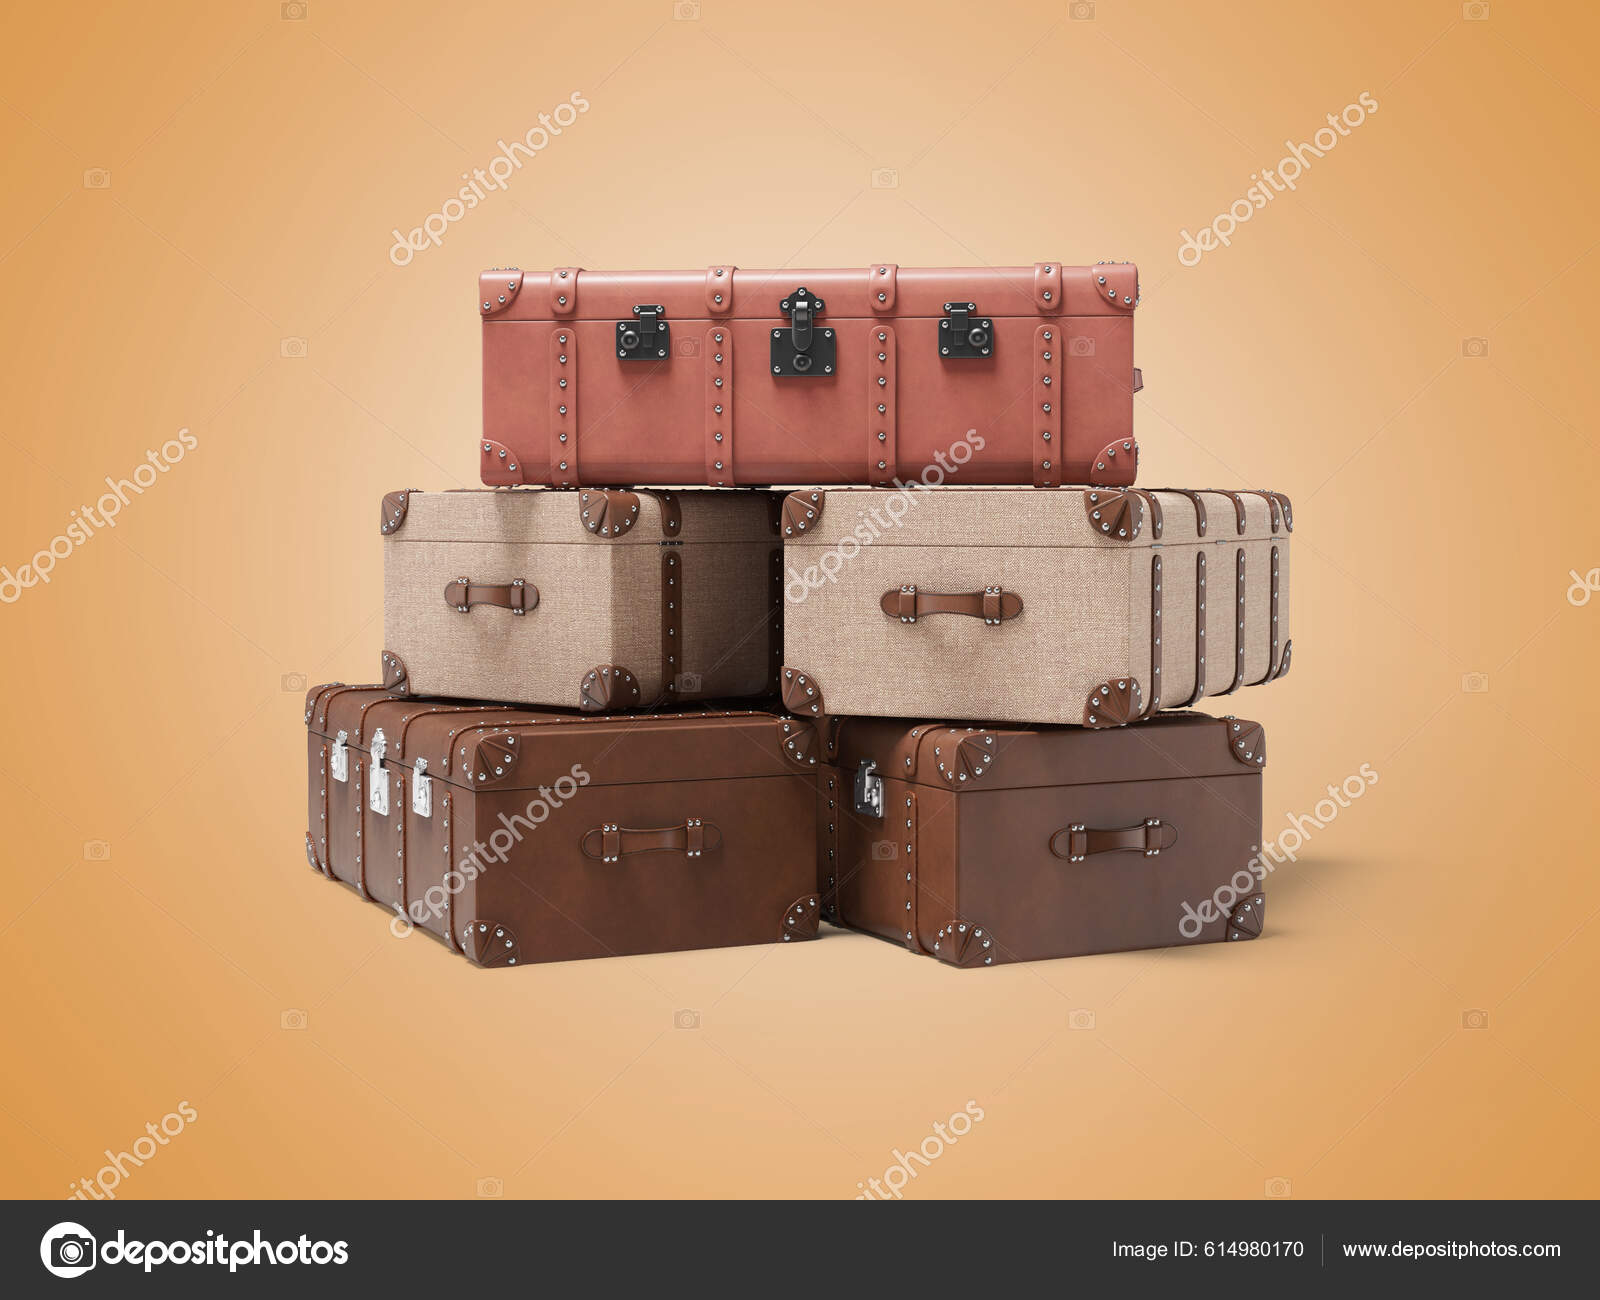 3d vintage suitcase set